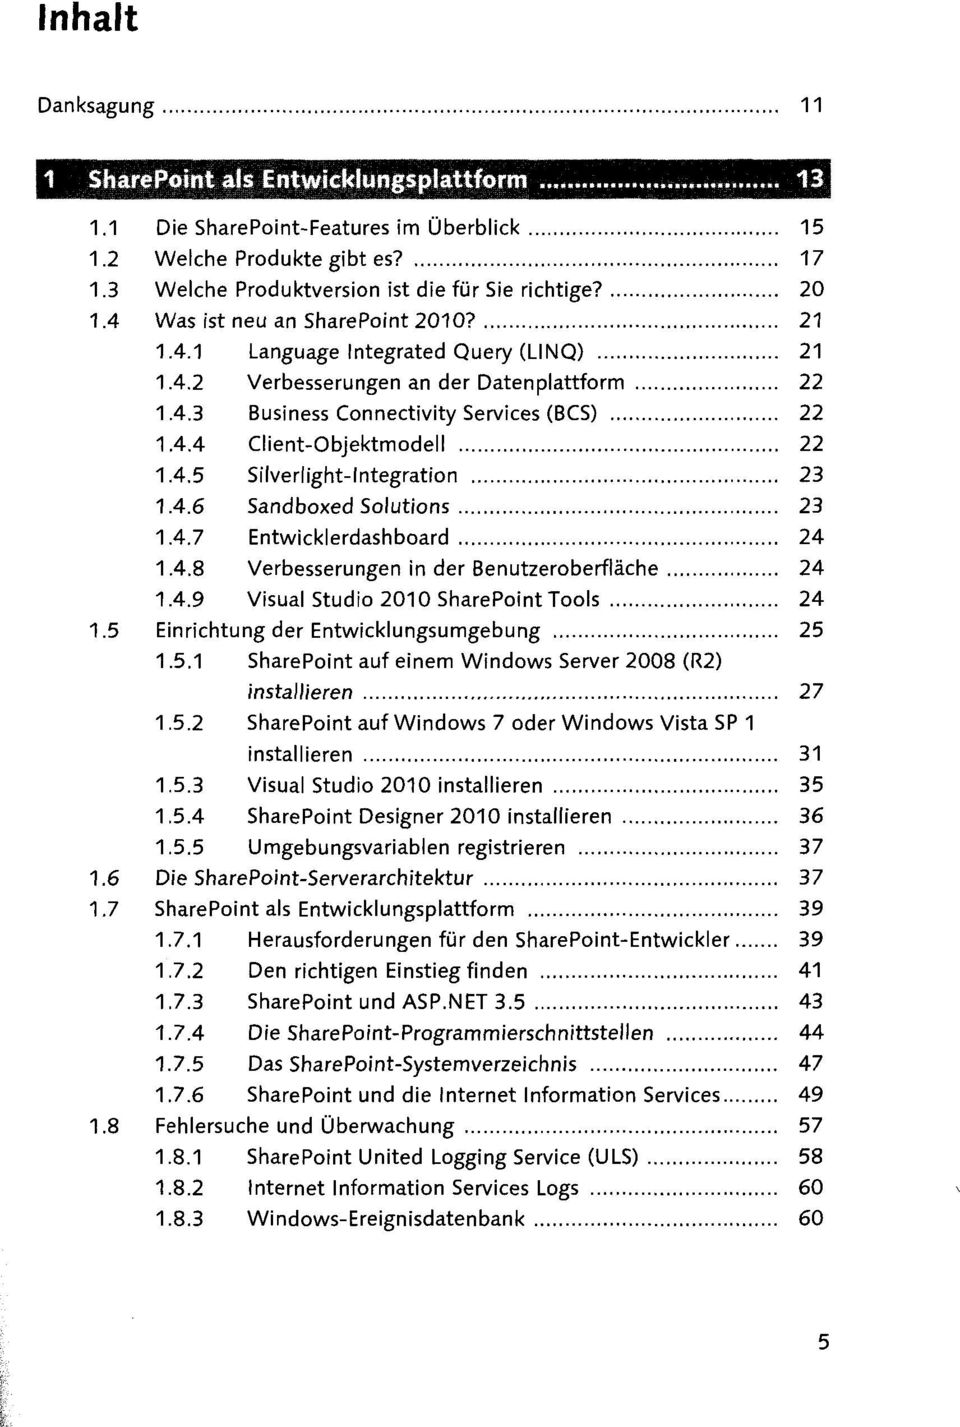 4.8 Verbesserungen in der Benutzeroberfläche 24 1.4.9 Visual Studio 2010 SharePoint Tools 24 1.5 Einrichtung der Entwicklungsumgebung 25 1.5.1 SharePoint auf einem Windows Server 2008 (R2) installieren 27 1.